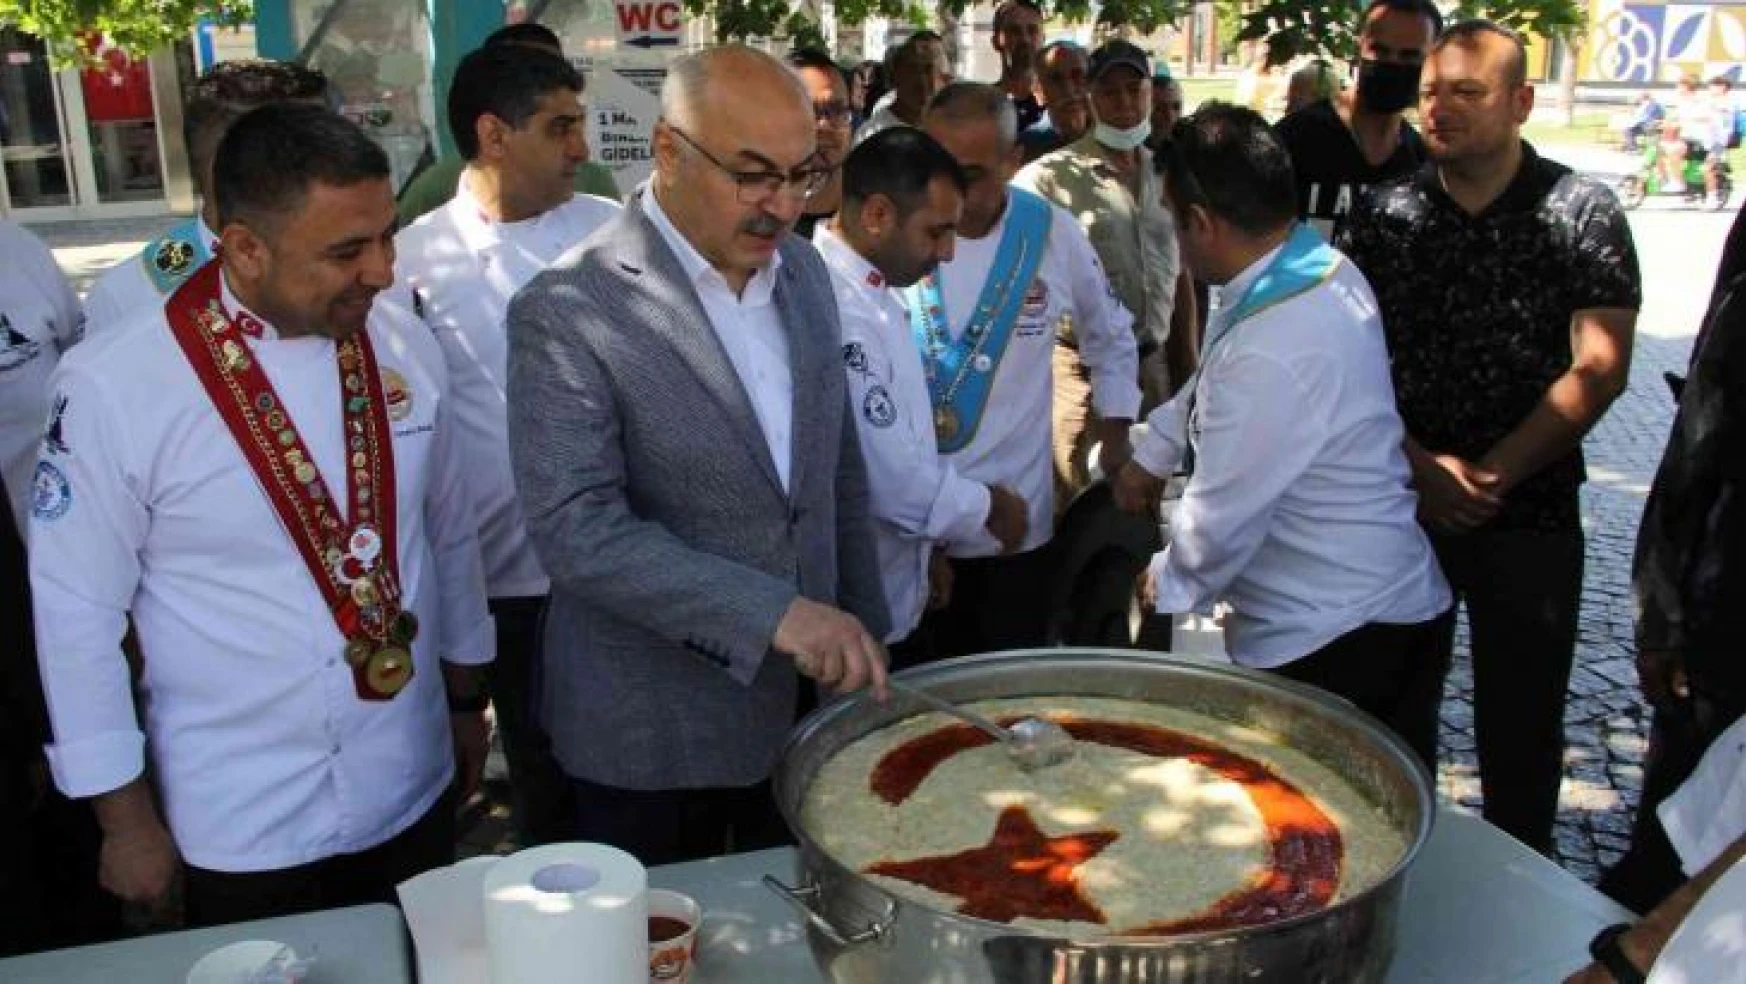 İzmir'de Türk Mutfağı Haftası kutlandı